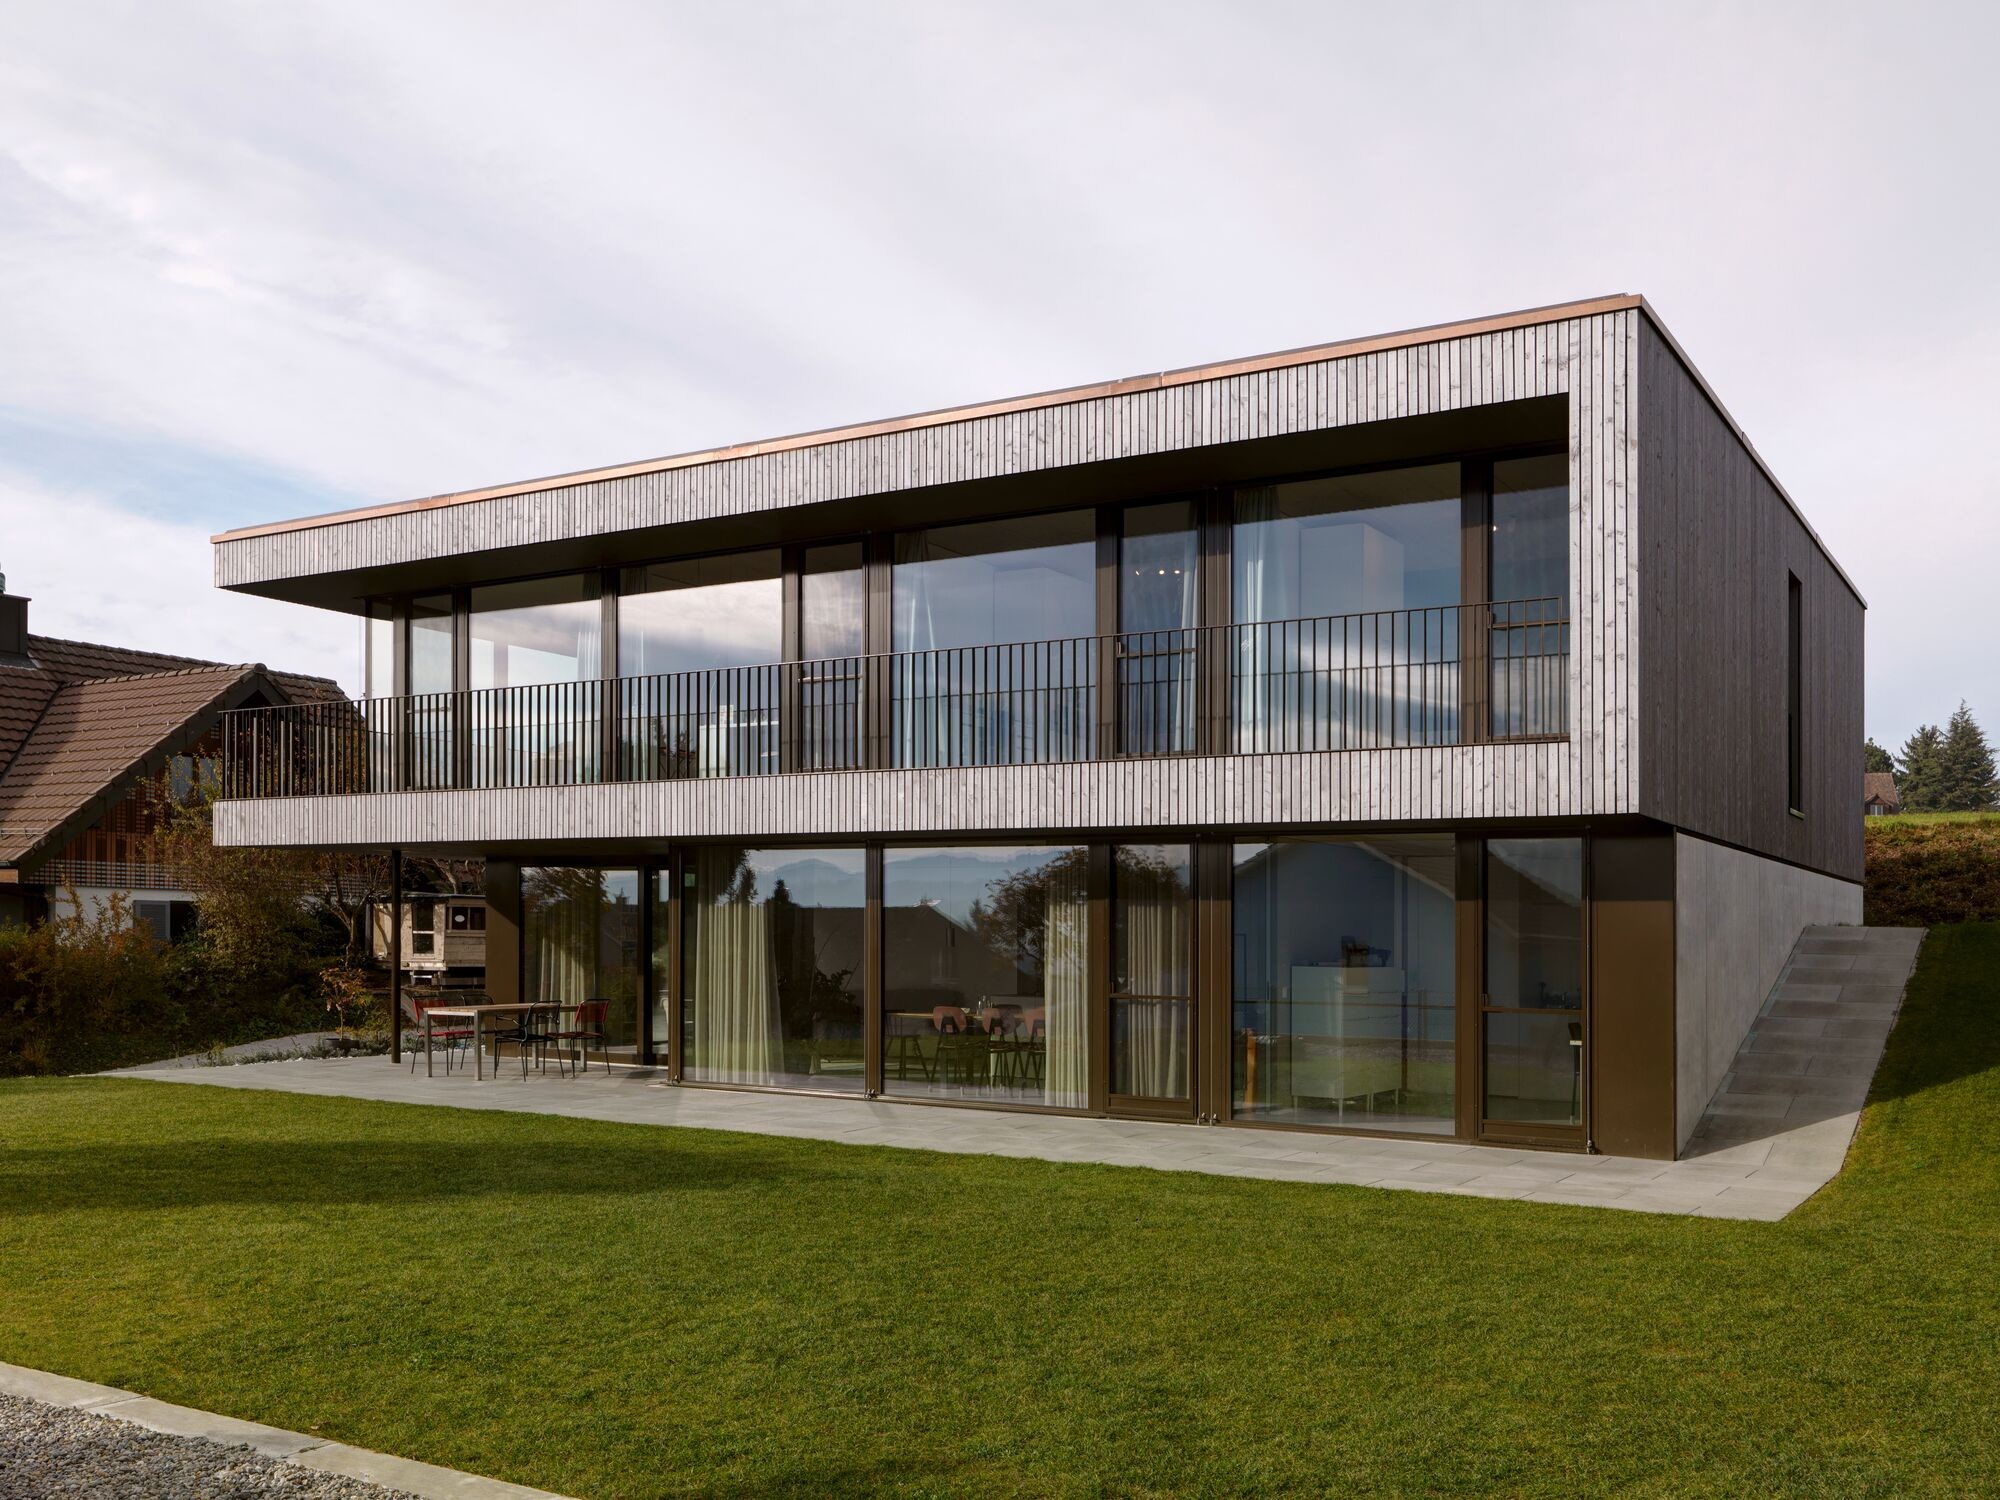 Modernes Einfamilienhaus mit Holzfassade und Glasfront<br/><br/>